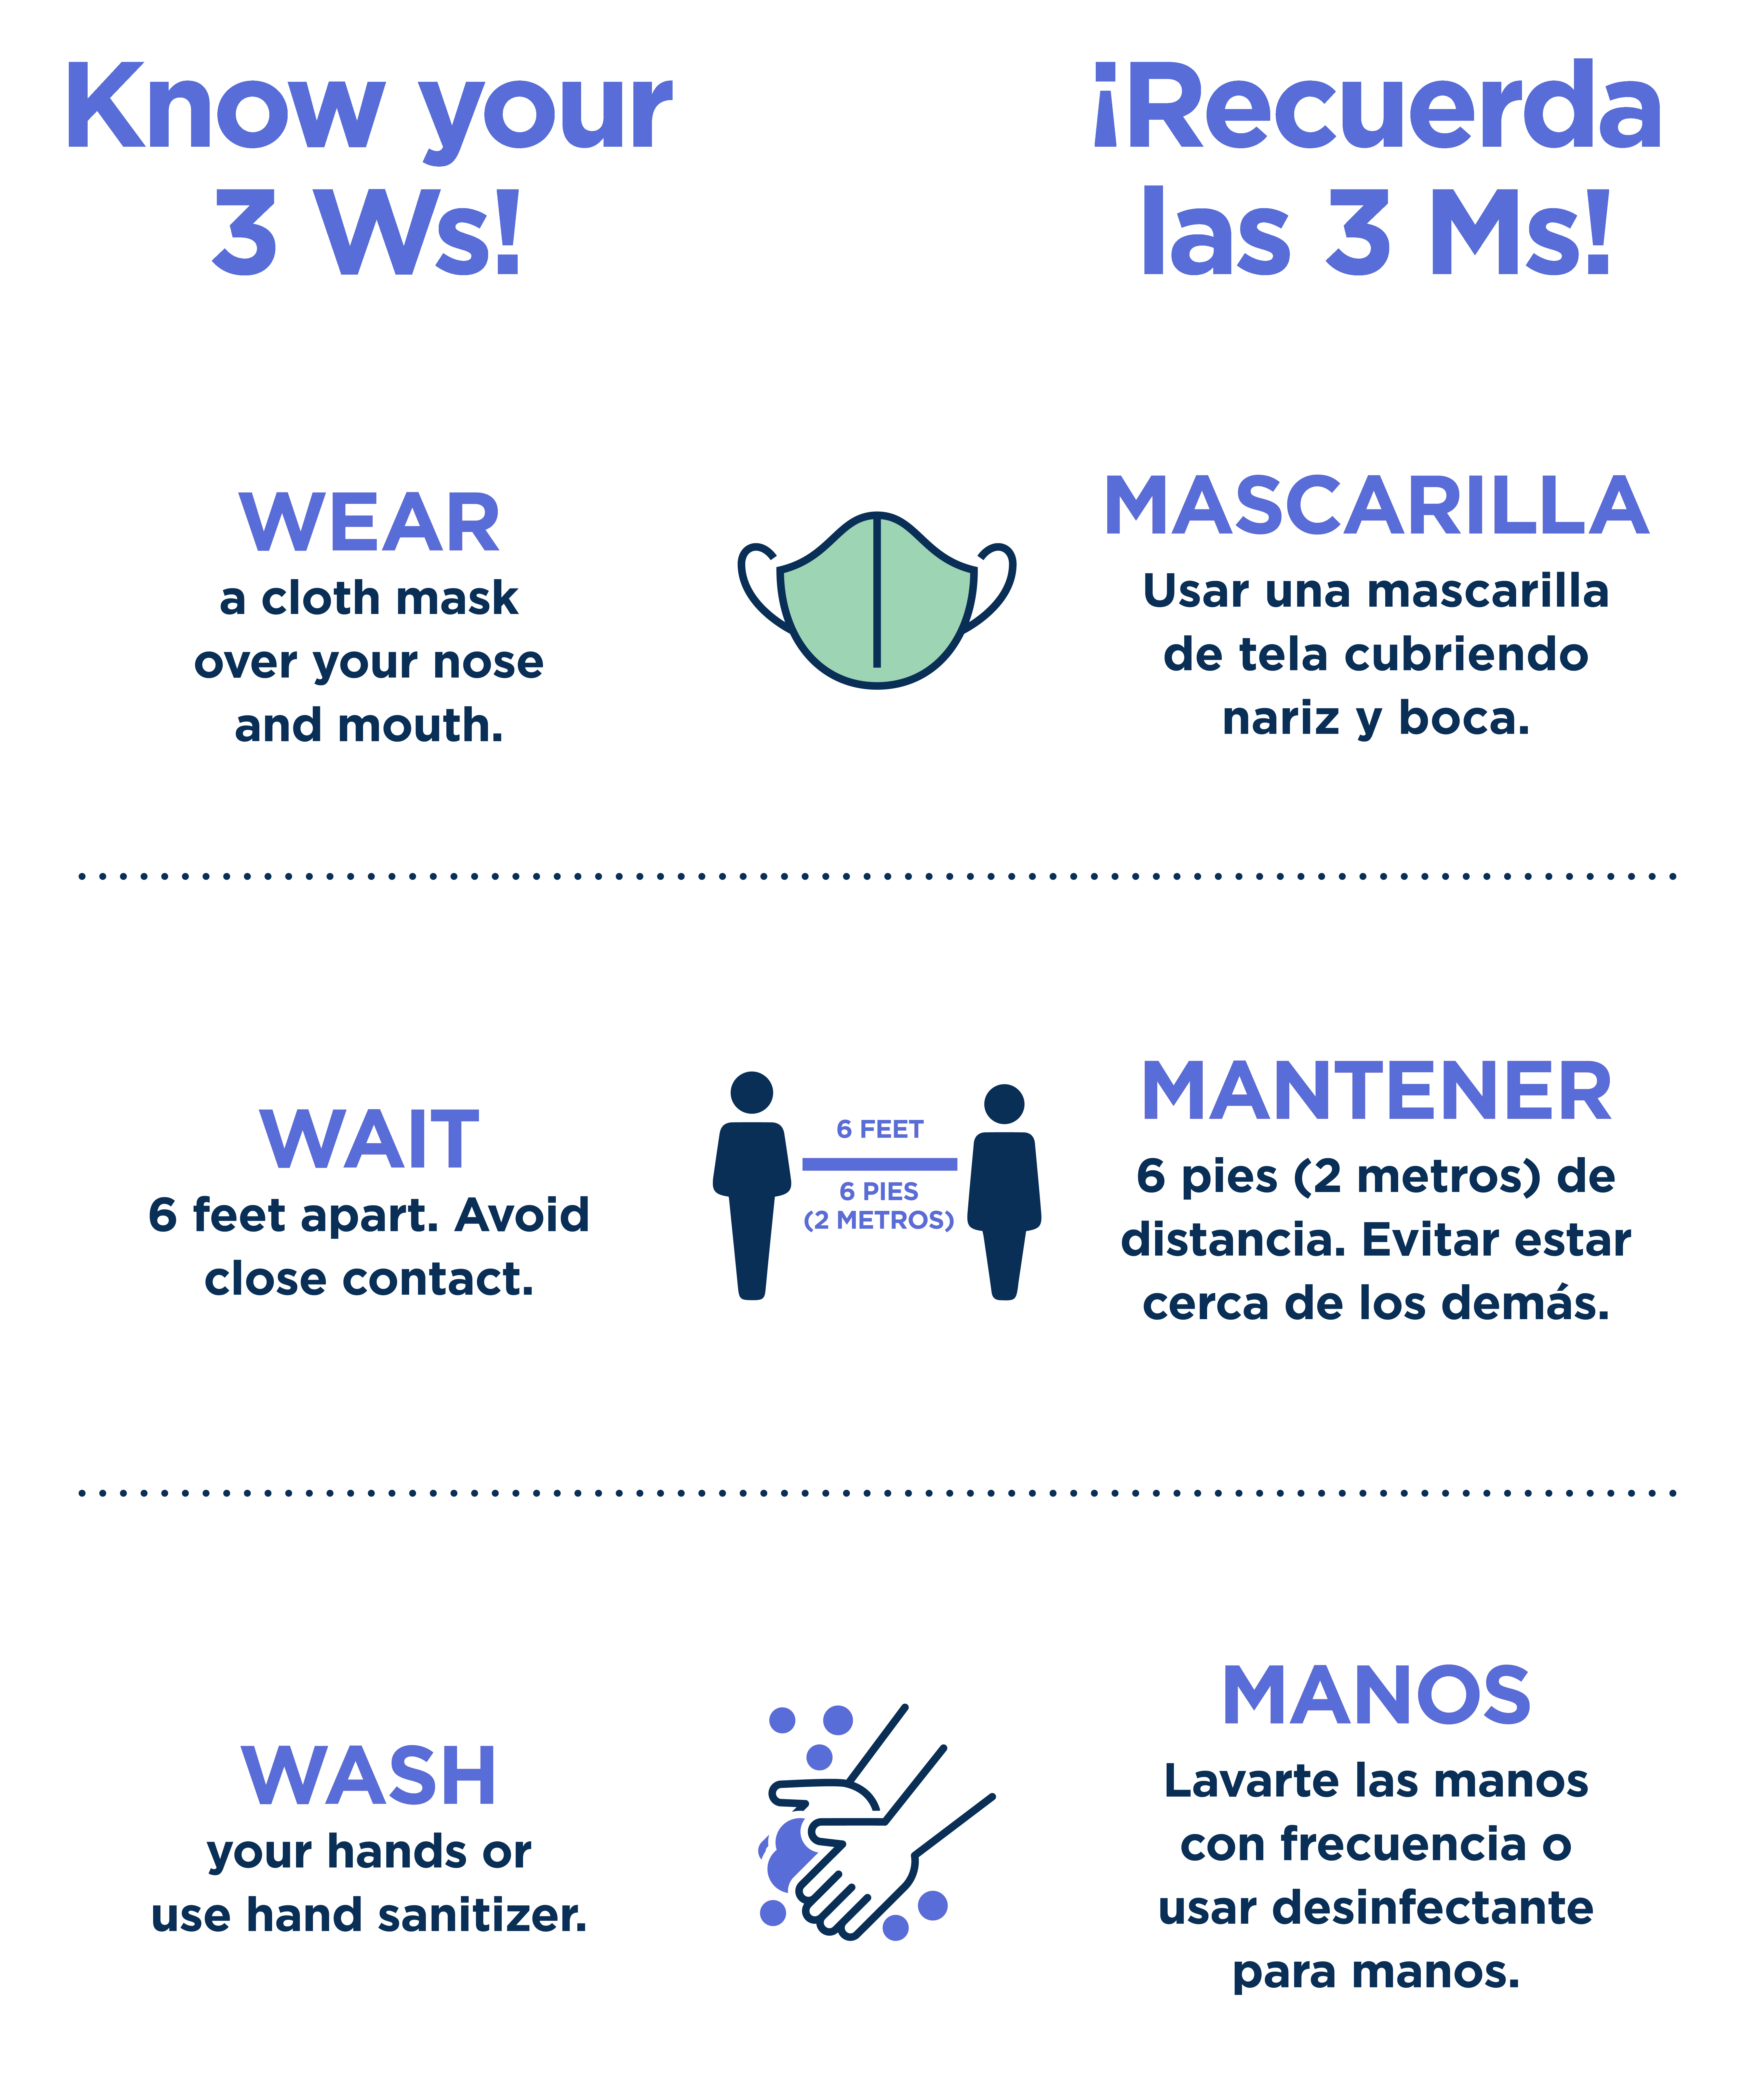 Know Your Ws! Wear, Wait, & Wash. Recuerda las 3 Ms: Mascarilla, Mantener, Manos.